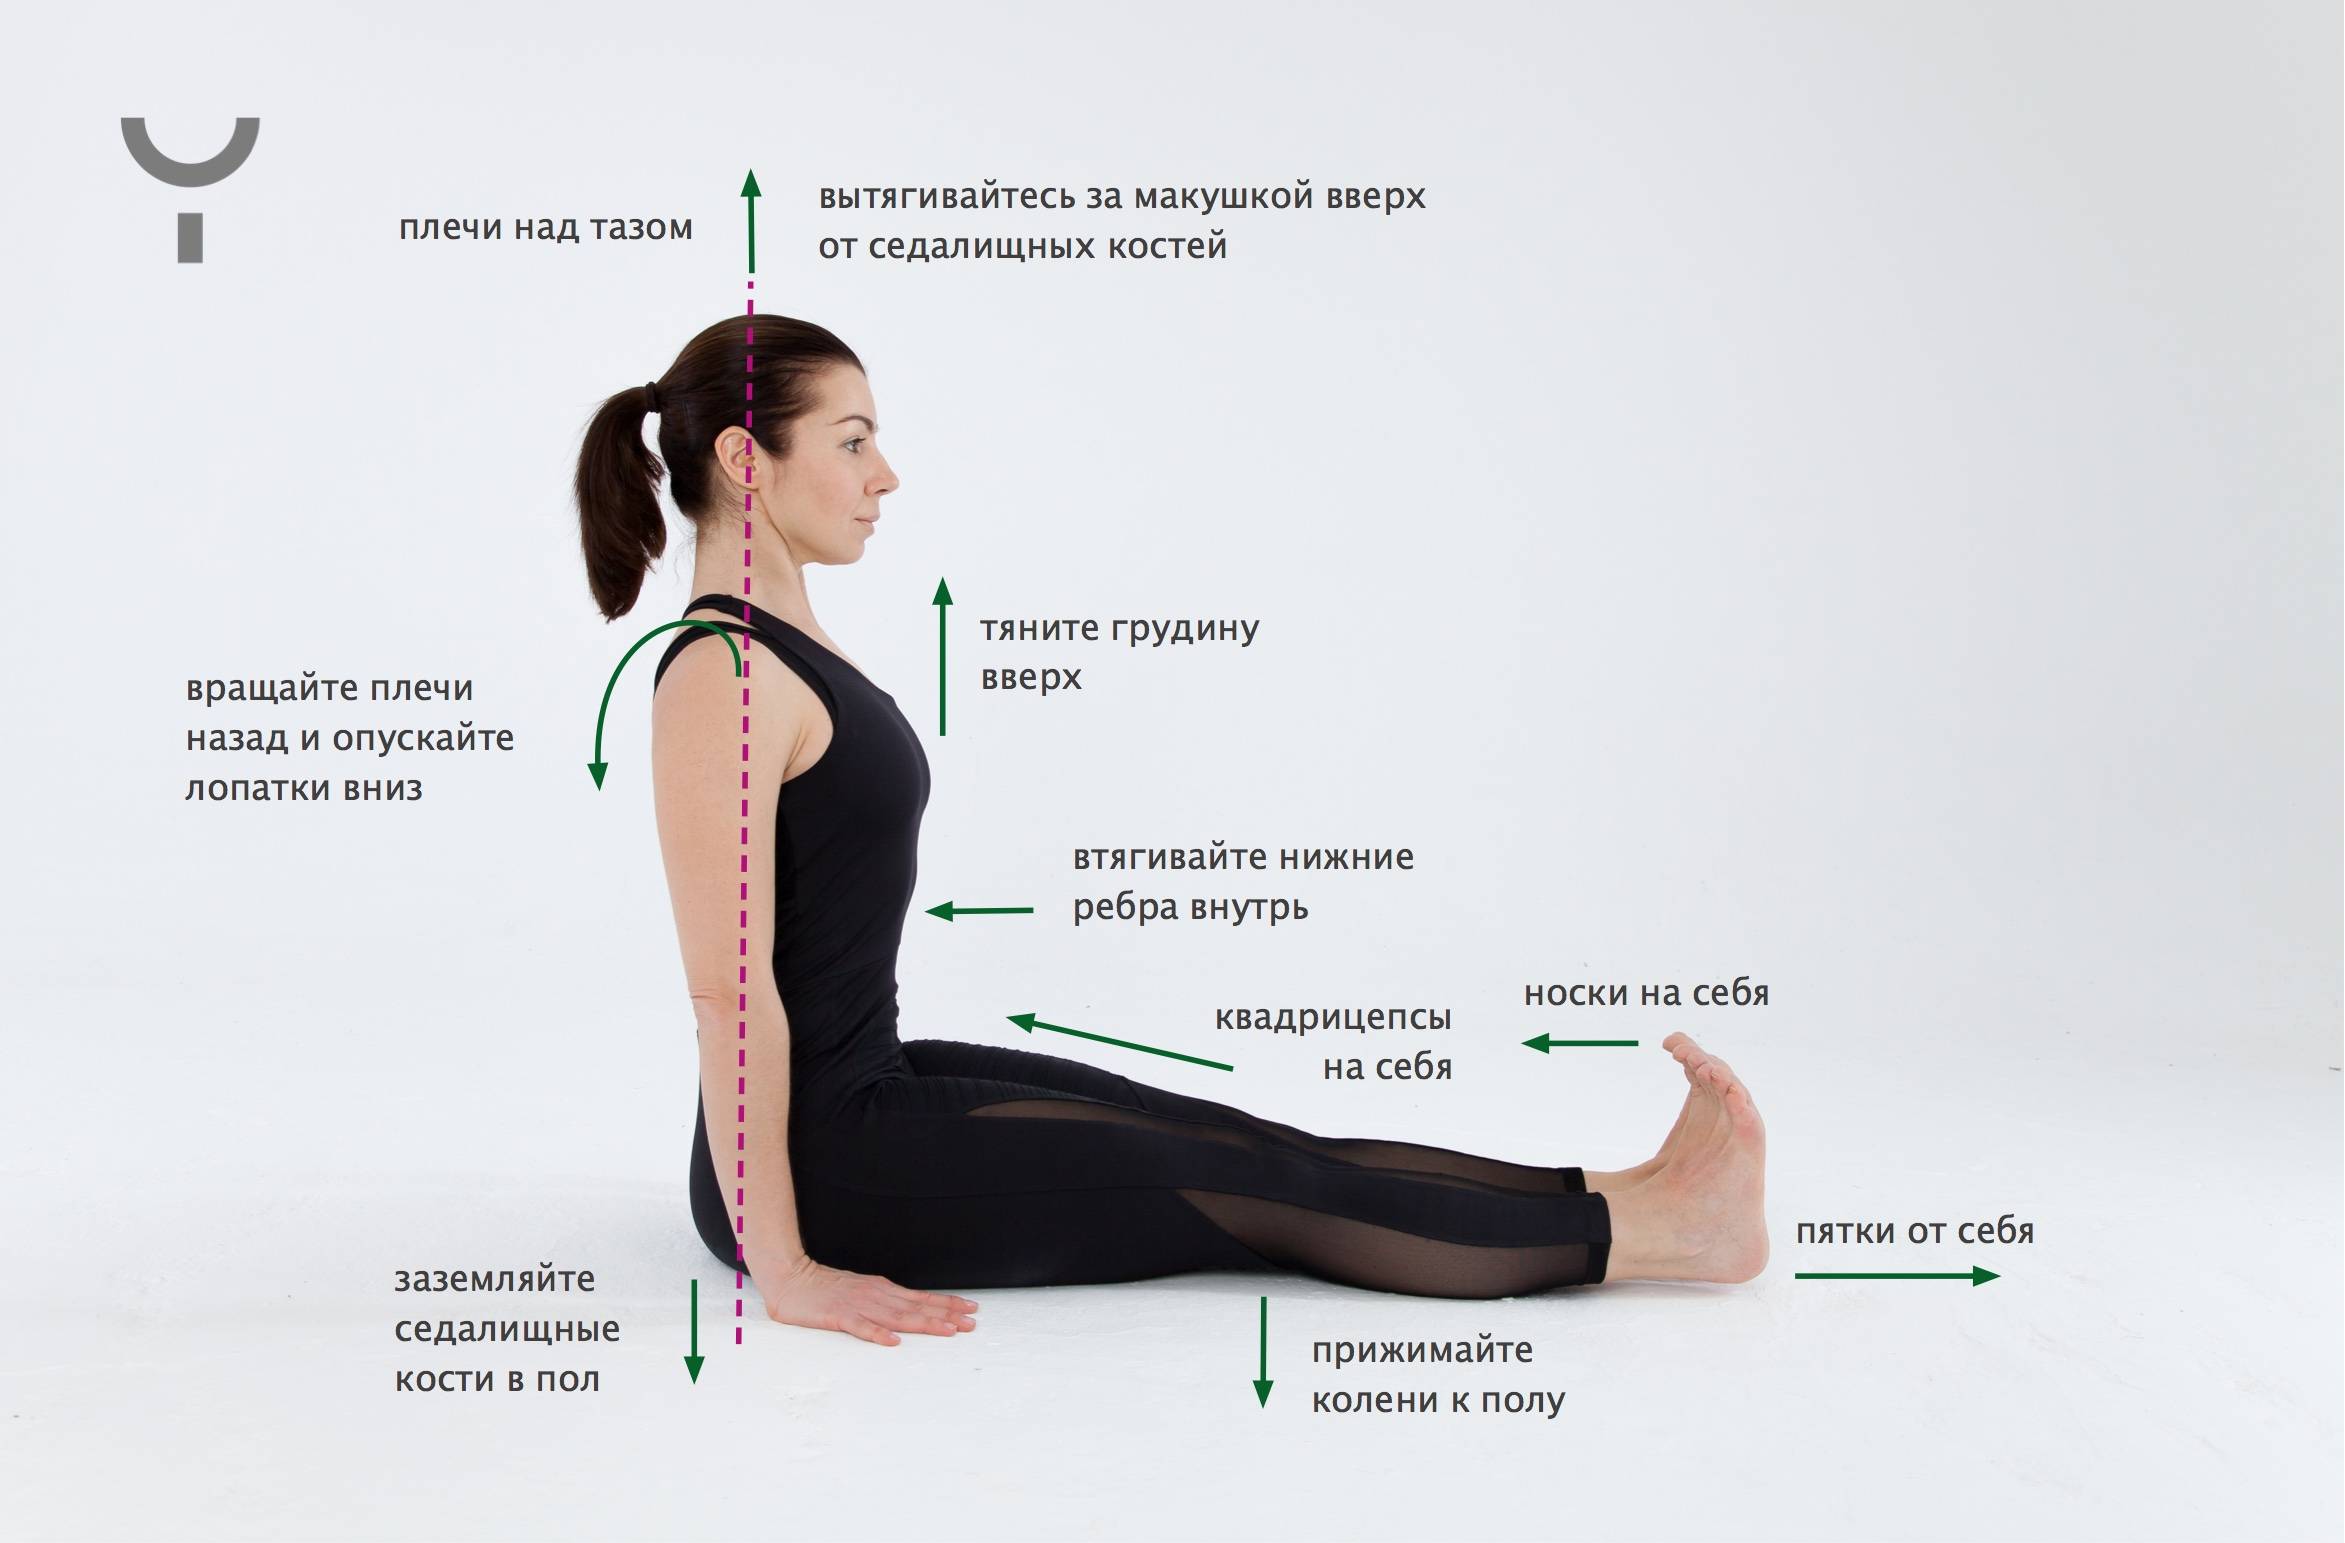 Поза посоха Дандасана – подробное описание для правильной практики йоги